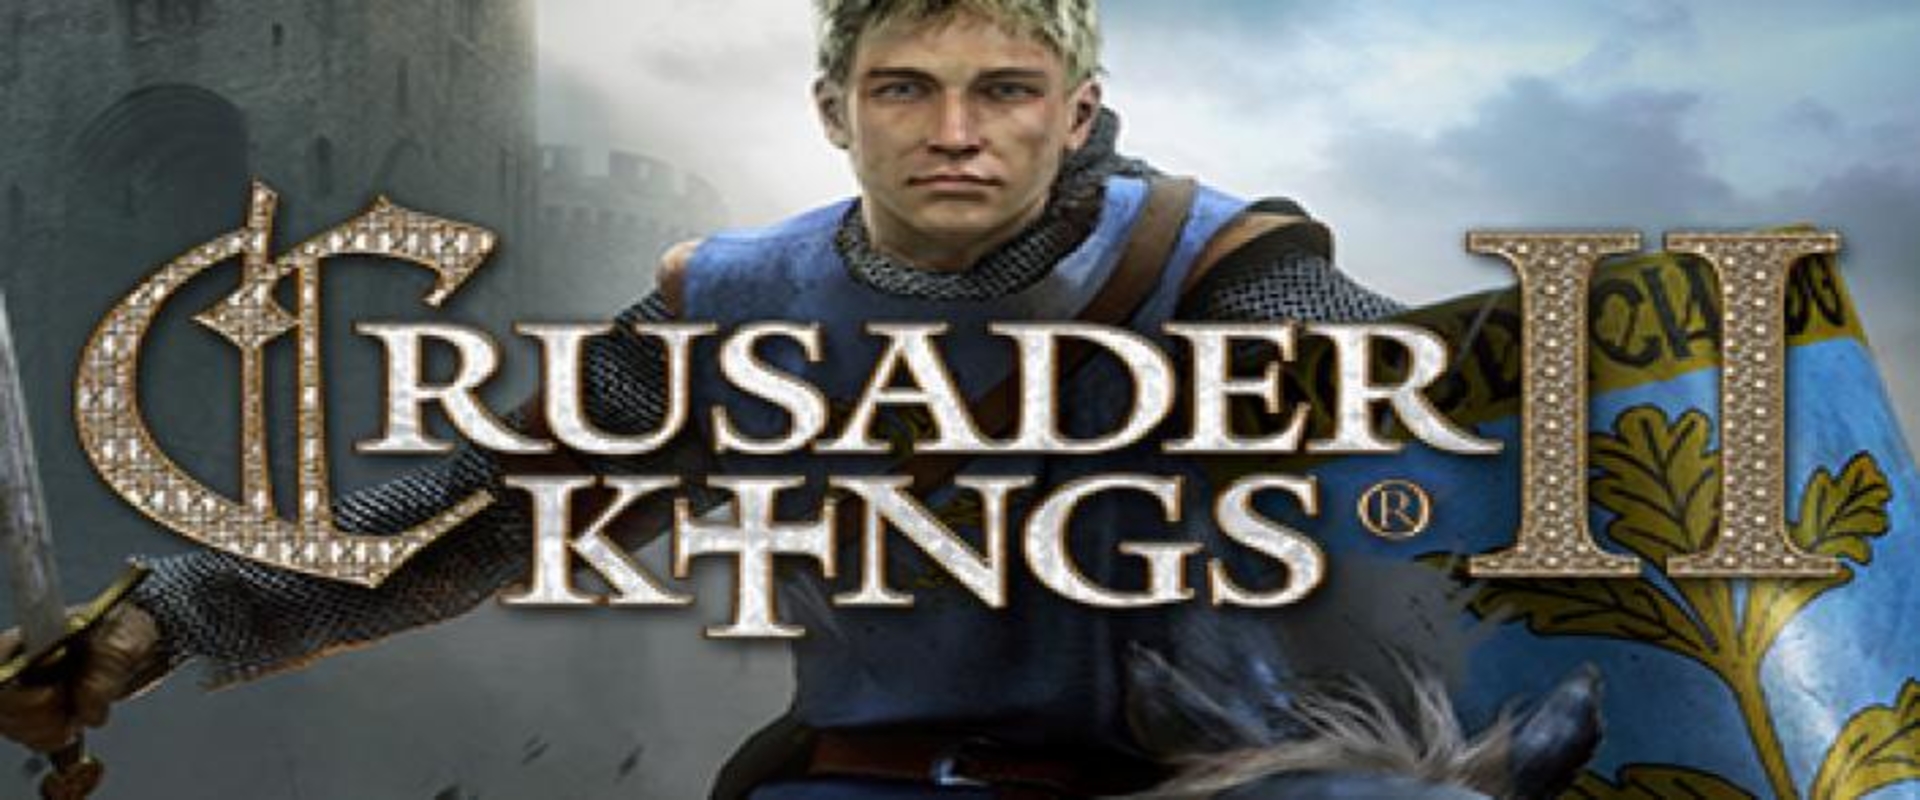 Ingyenes a Crusader Kings II!